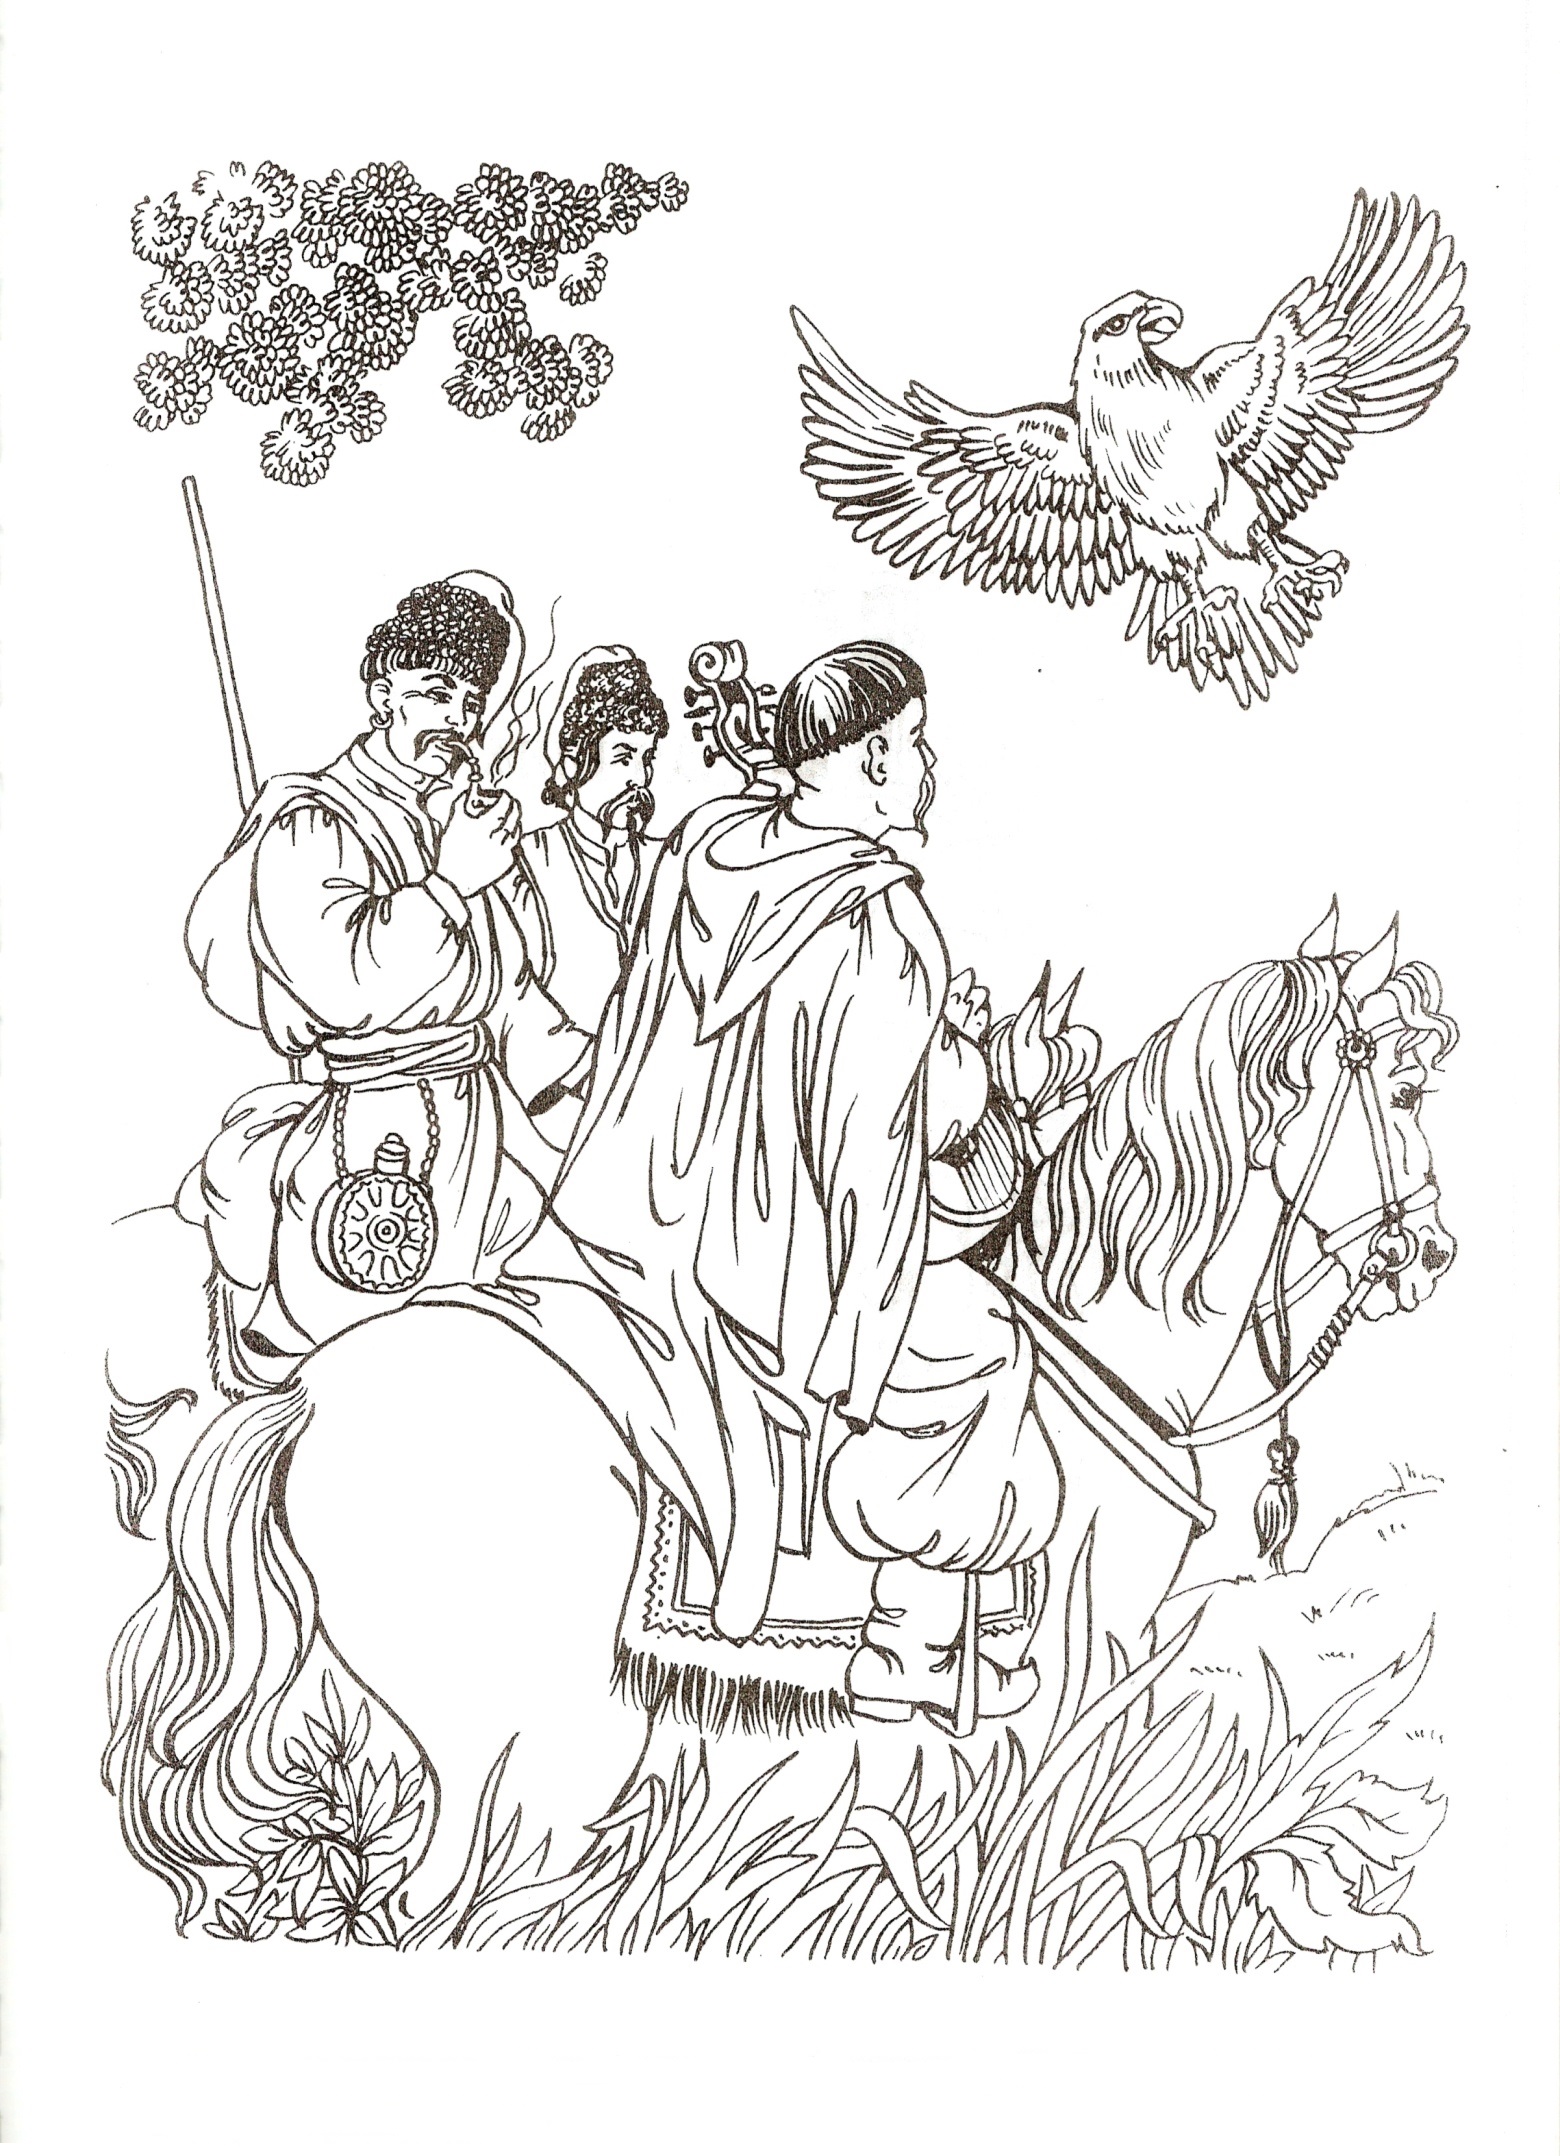 Cossacks on horseback